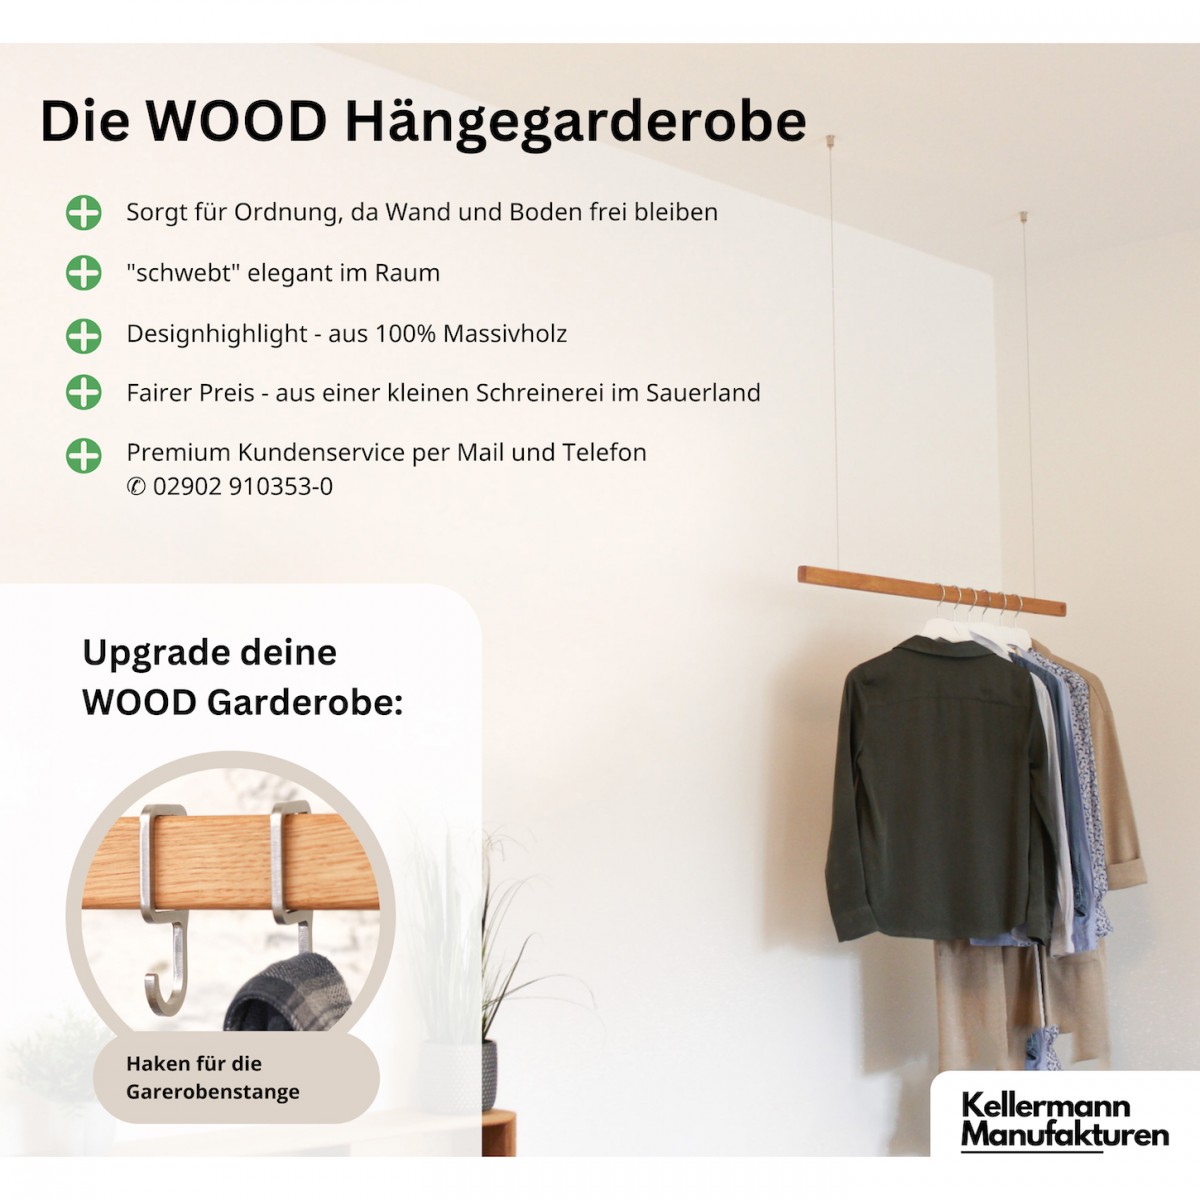 OAK Hängegarderobe Eiche | schwebende Kleiderstange [40 - 160 cm] Deckenmontage | Kellermann Manufakturen